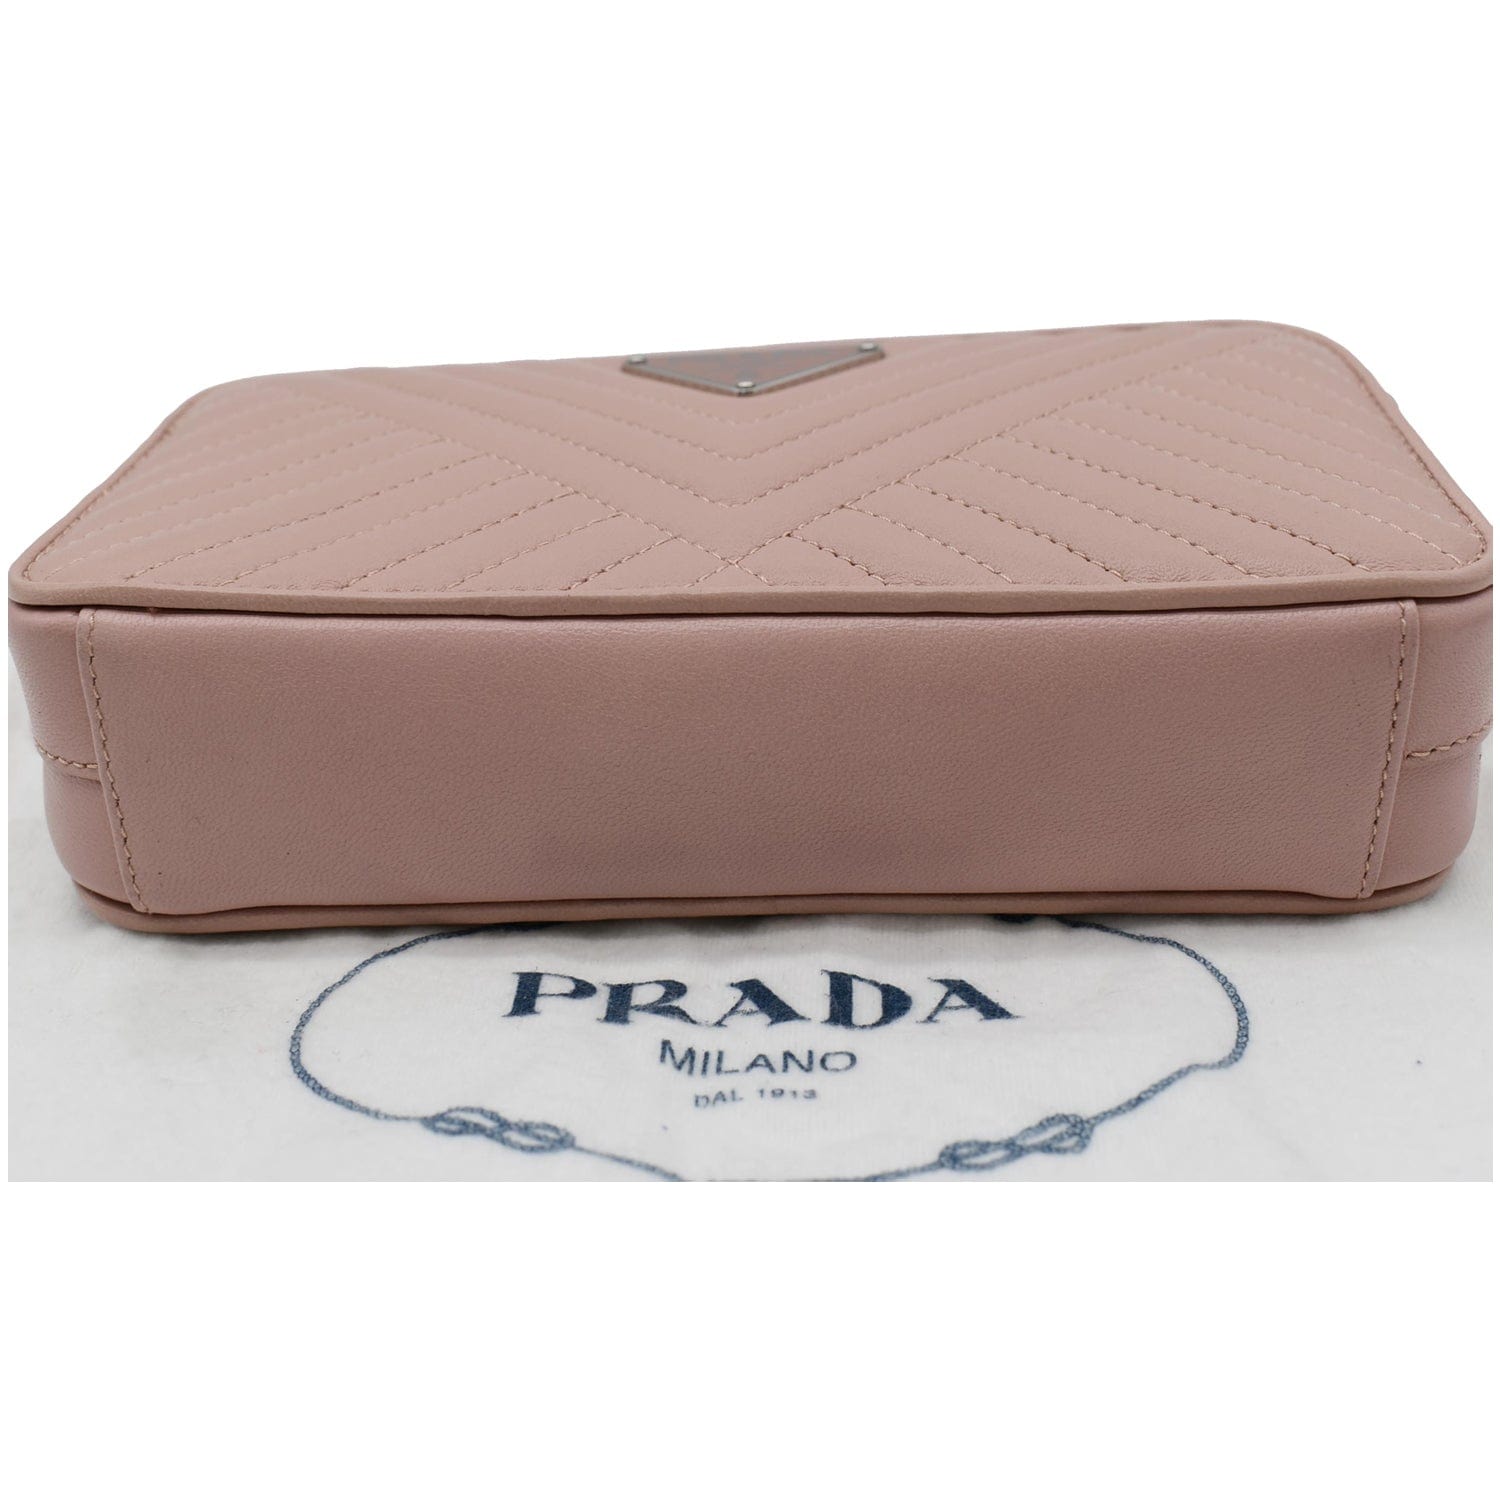 PRADA Nappa Mini Impunture Bandoliera Chain Leather Crossbody Bag Orch